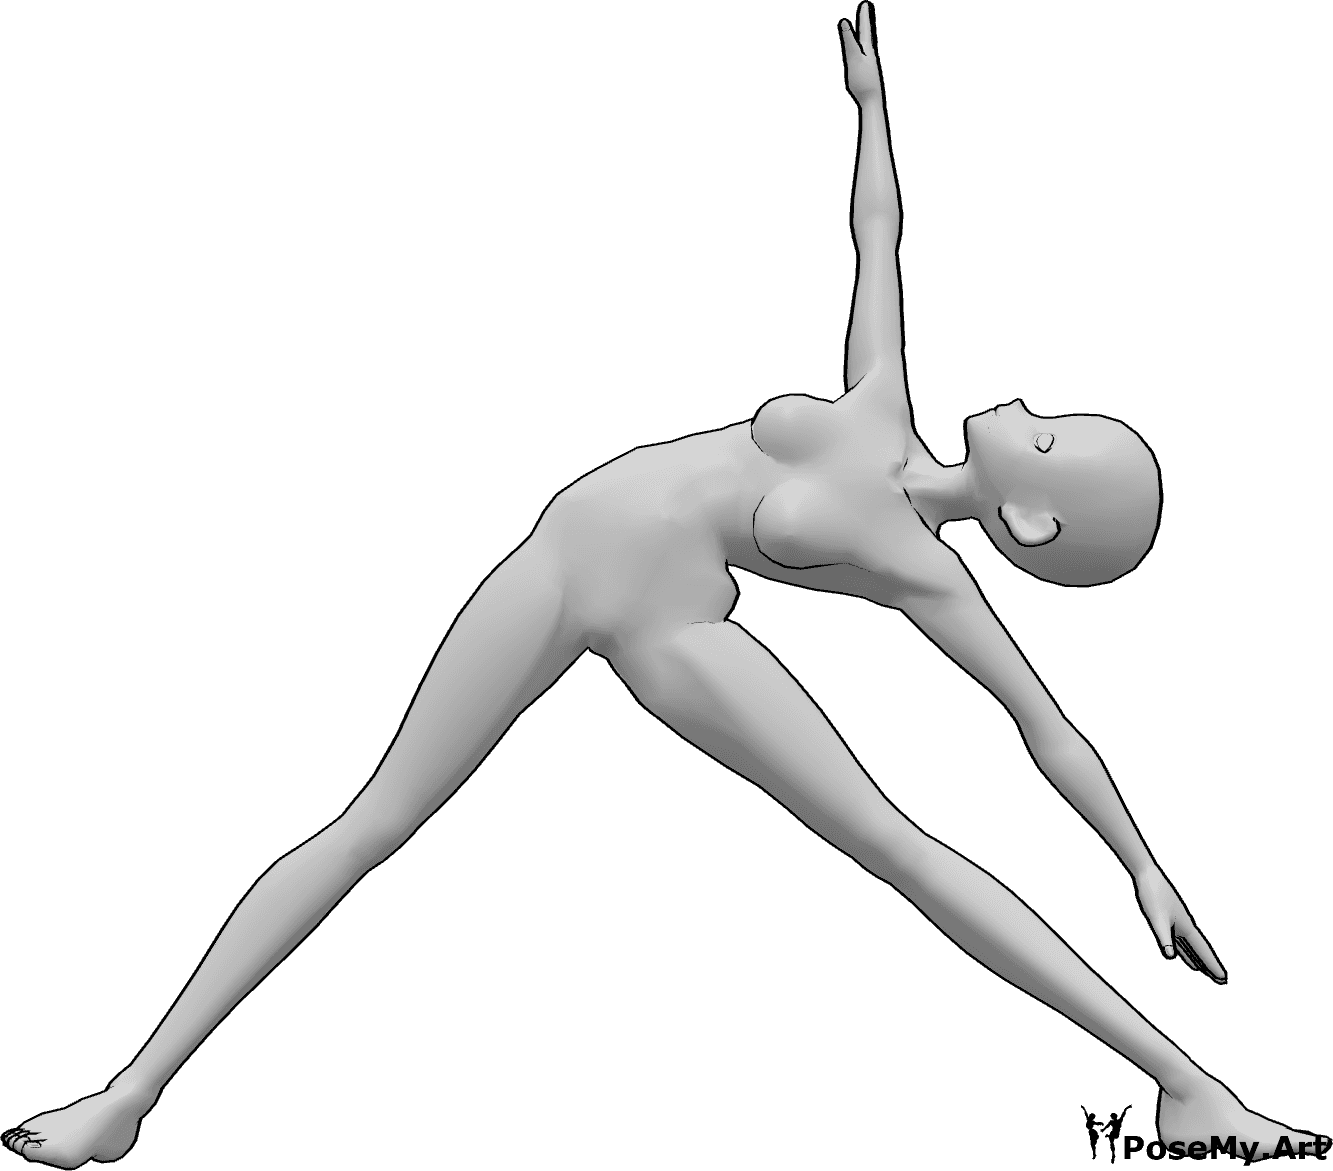 Referência de poses- Pose de alongamento de corpo inteiro - A mulher anime está inclinada para a esquerda, olhando para cima, esticando os braços e as pernas